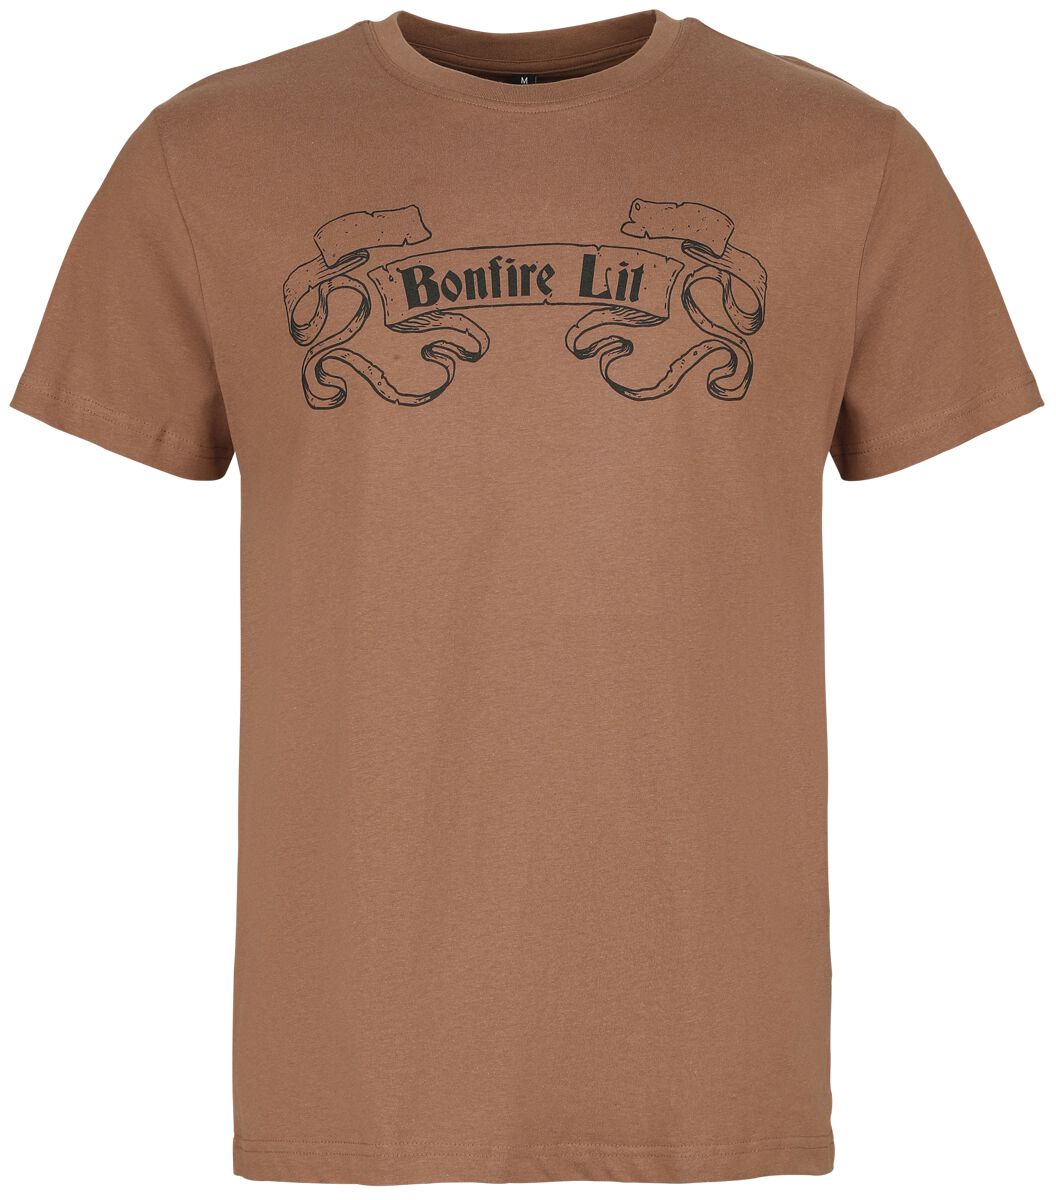 Dark Souls - Gaming T-Shirt - Bonfire Lit - S bis L - für Männer - Größe S - braun  - EMP exklusives Merchandise!